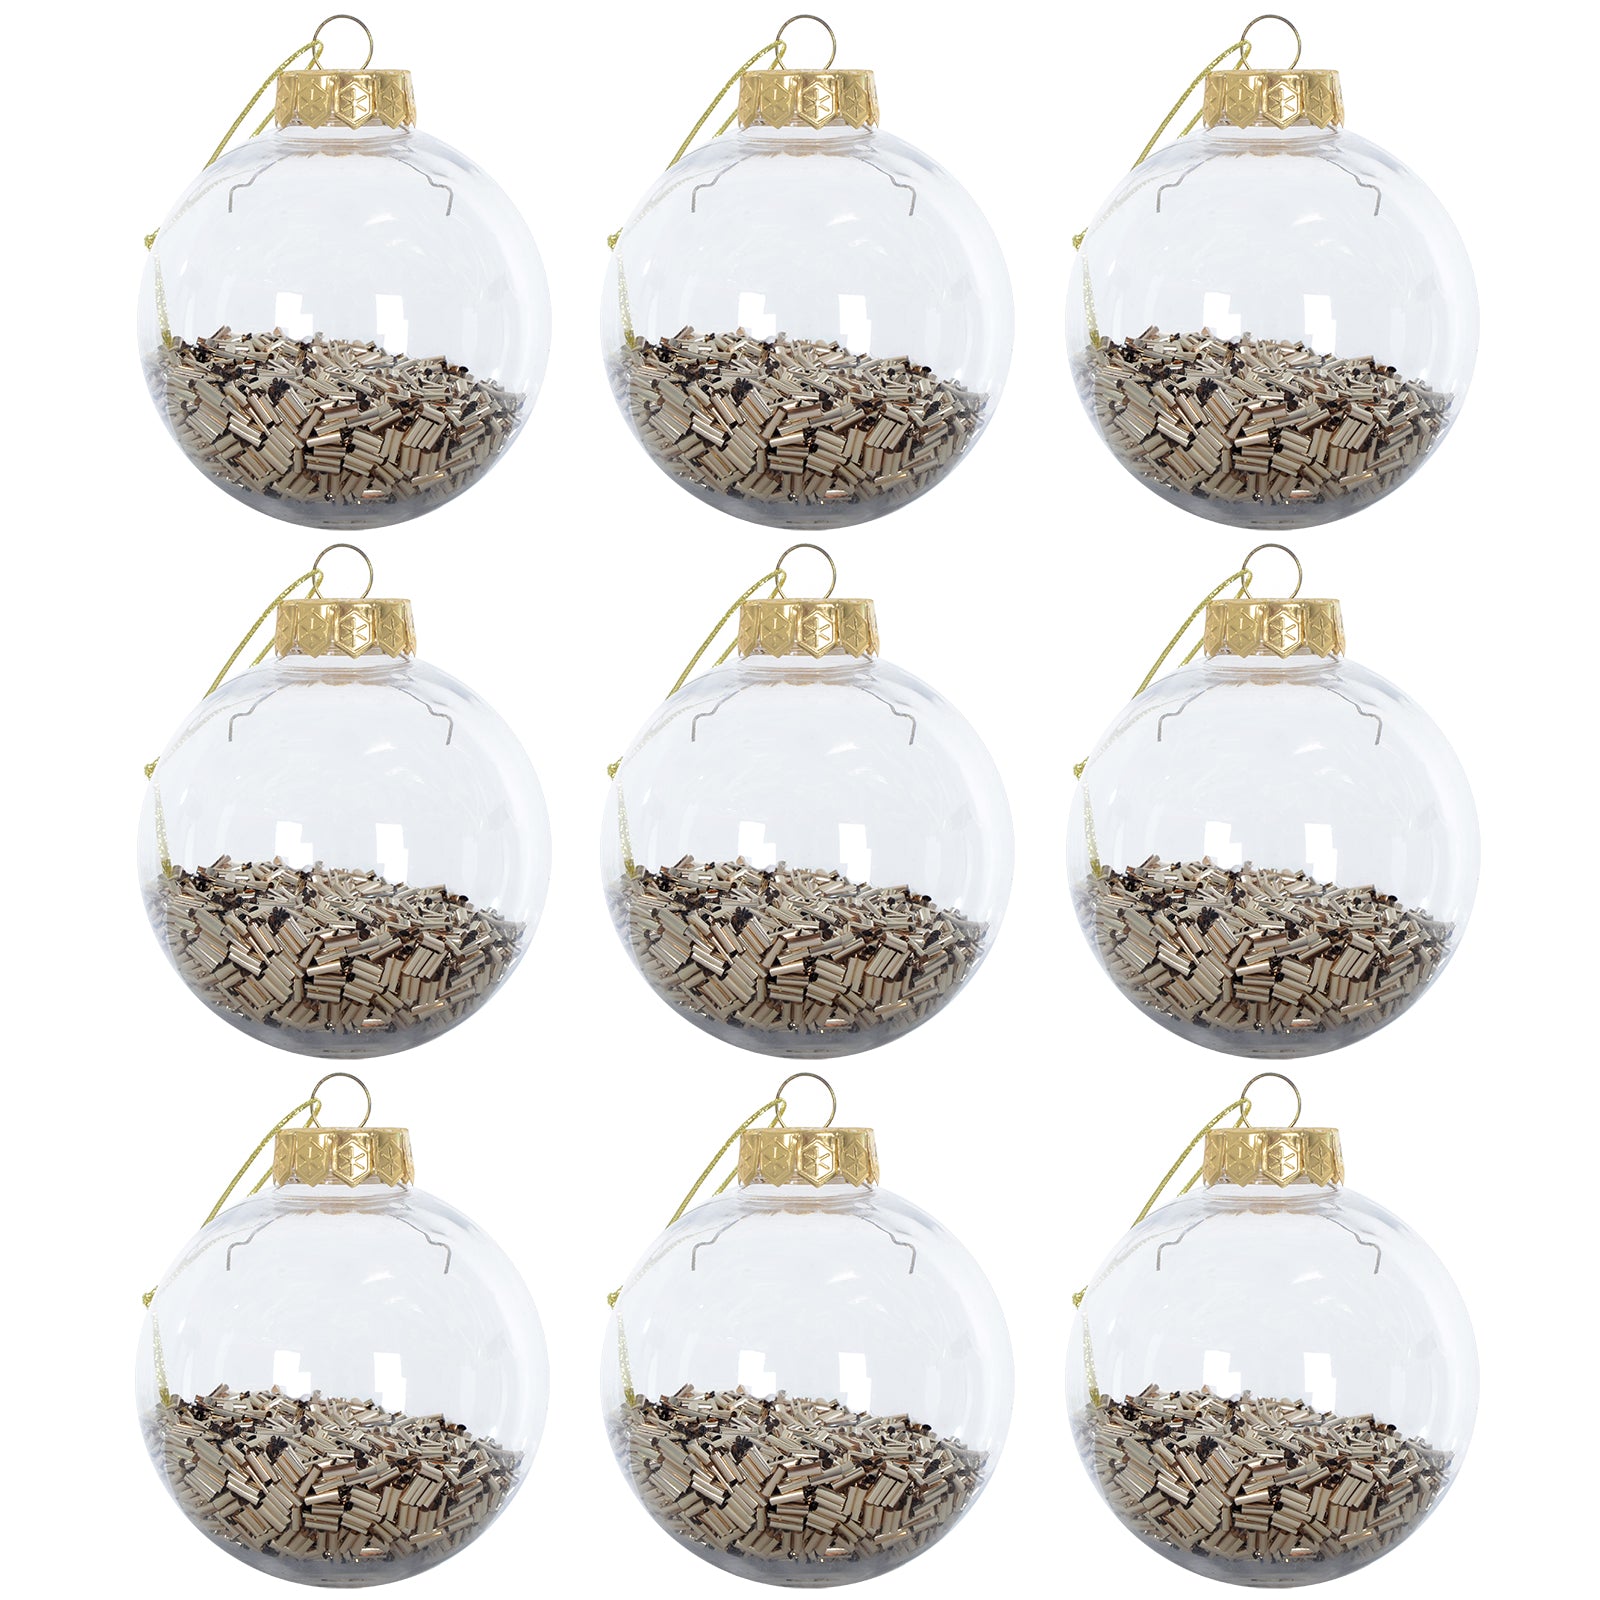 Mr Crimbo 9 x 8cm Foil Filled Shaker Christmas Tree Baubles - MrCrimbo.co.uk -XS6472 - Gold -Baubles